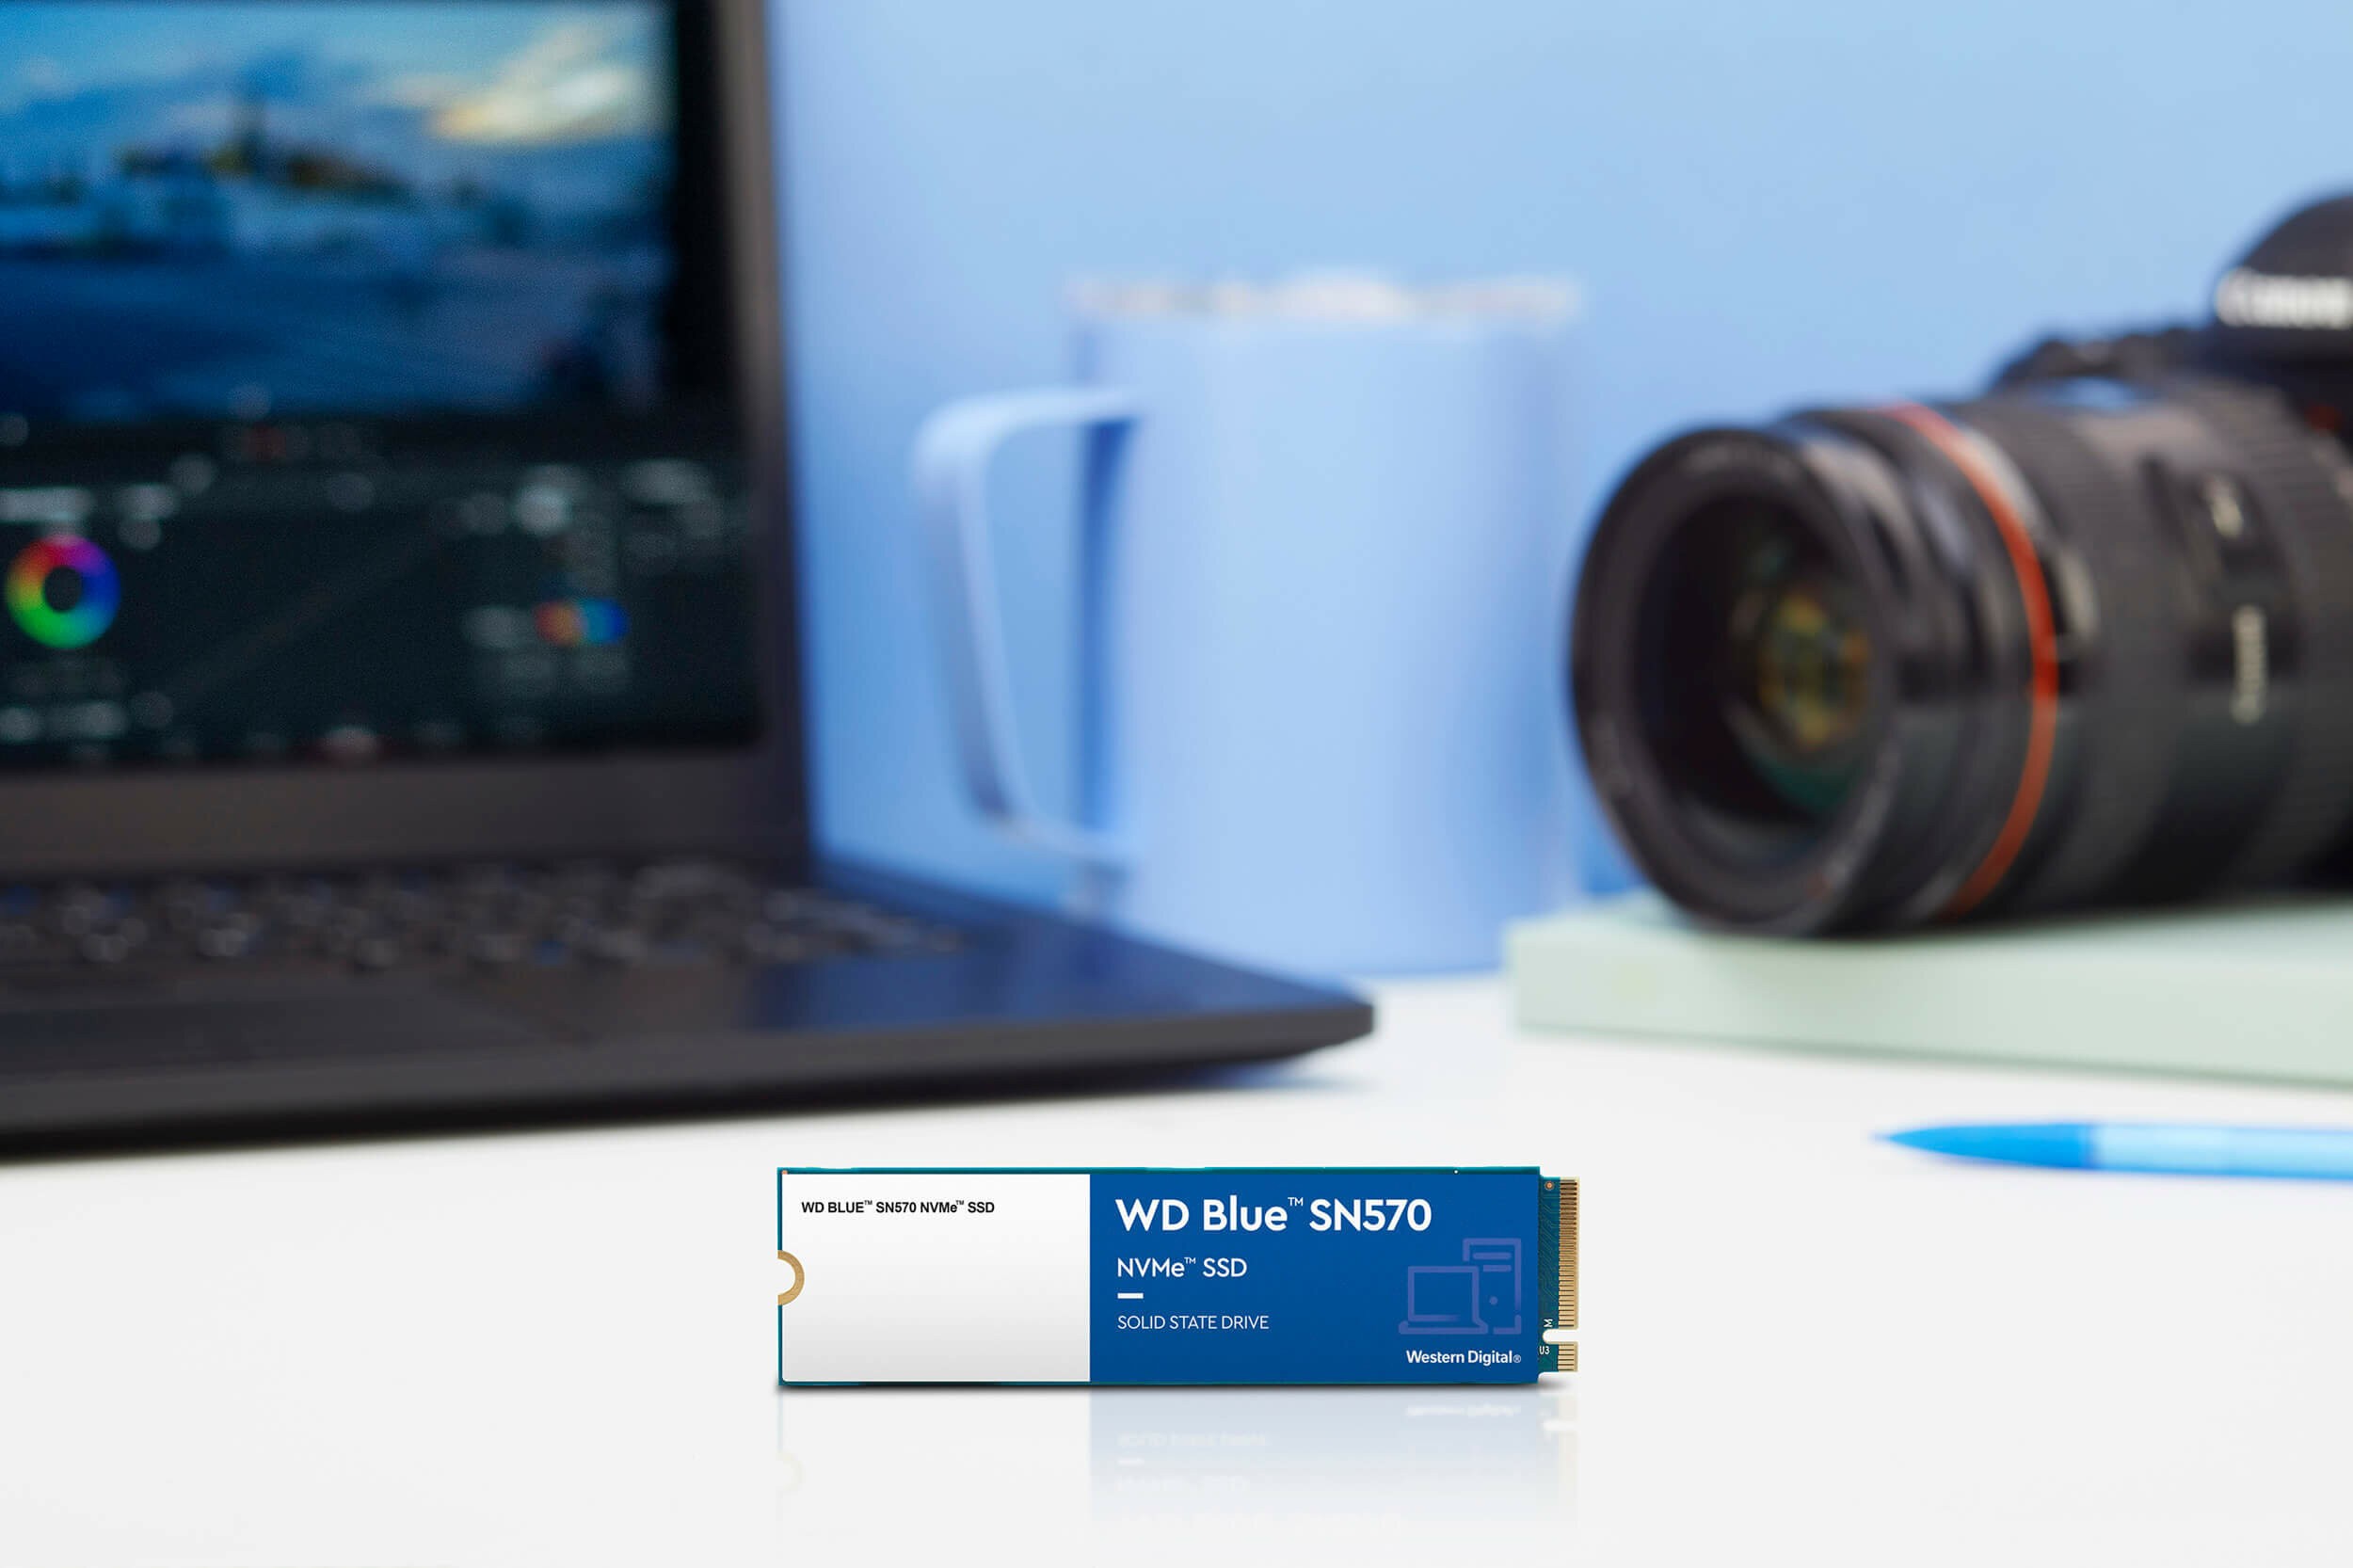 Western Digital Blue 250GB  Gen3 M.2 NVMe Internal SSD